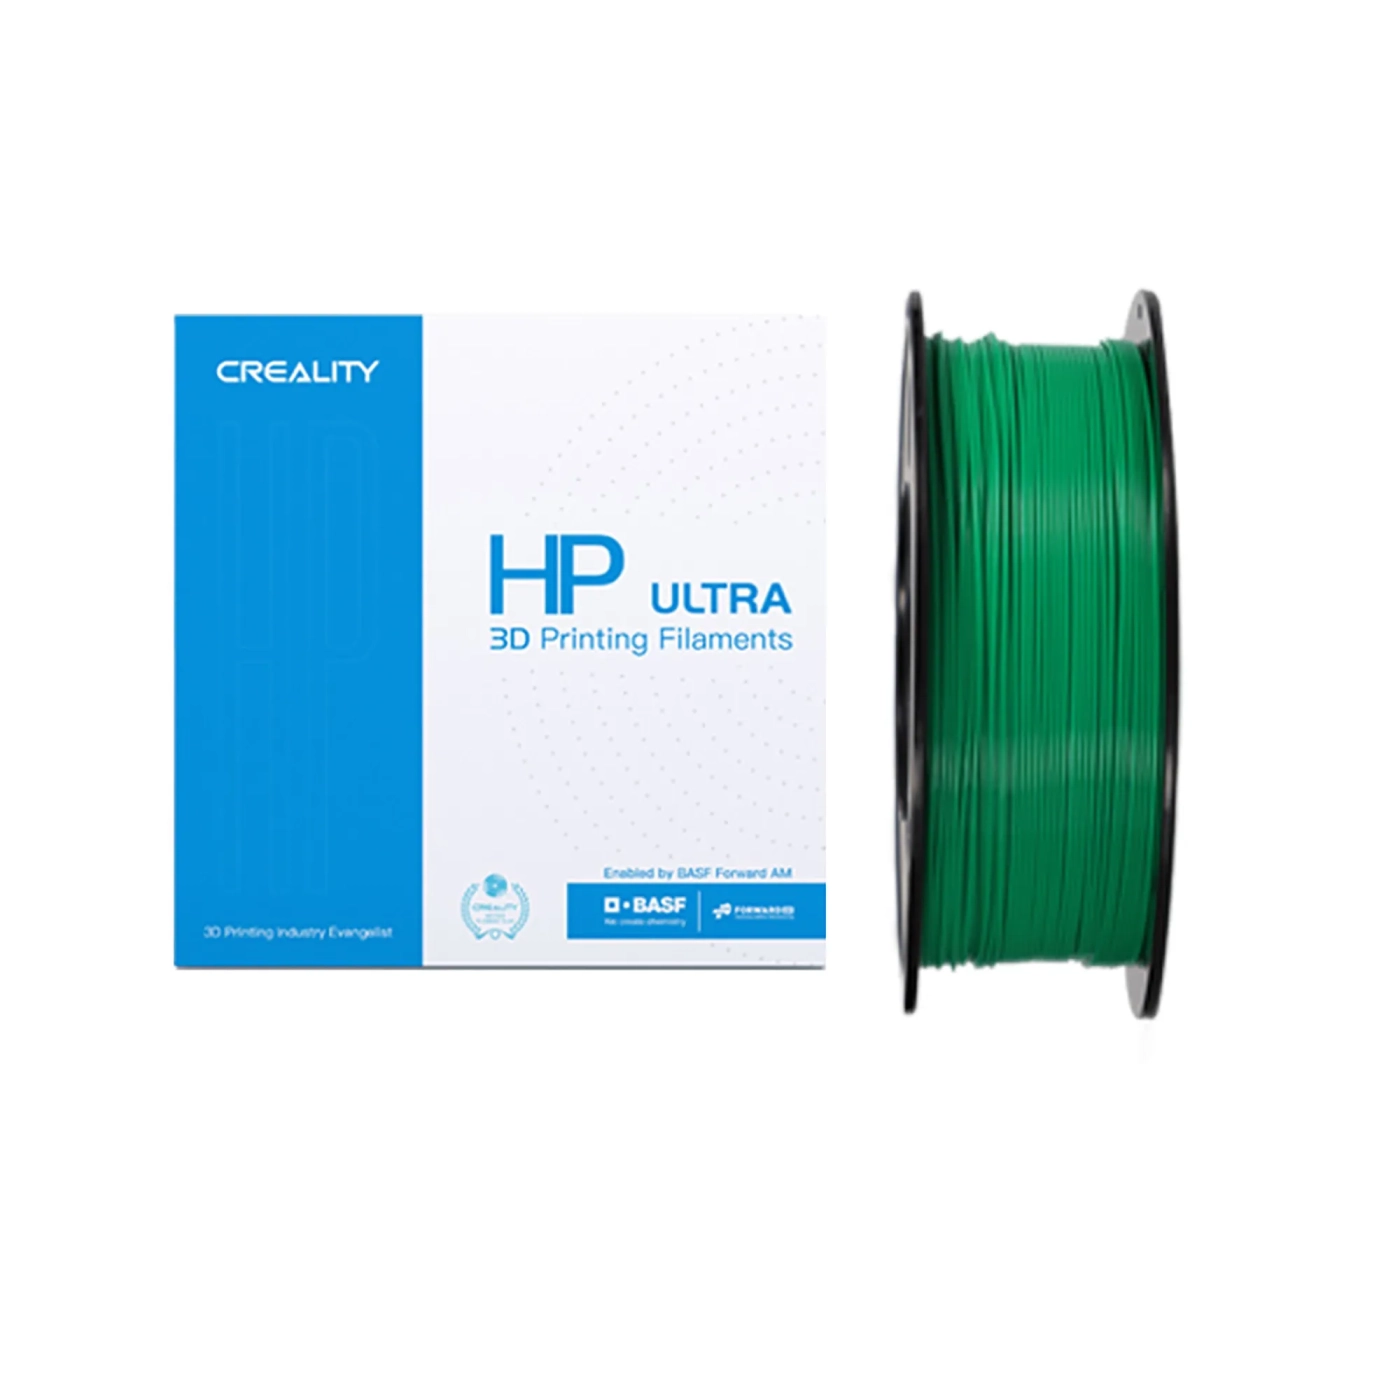 Купить HP ULTRA PLA Filament (пластик) для 3D принтера CREALITY 1кг, 1.75мм, зеленый - фото 1